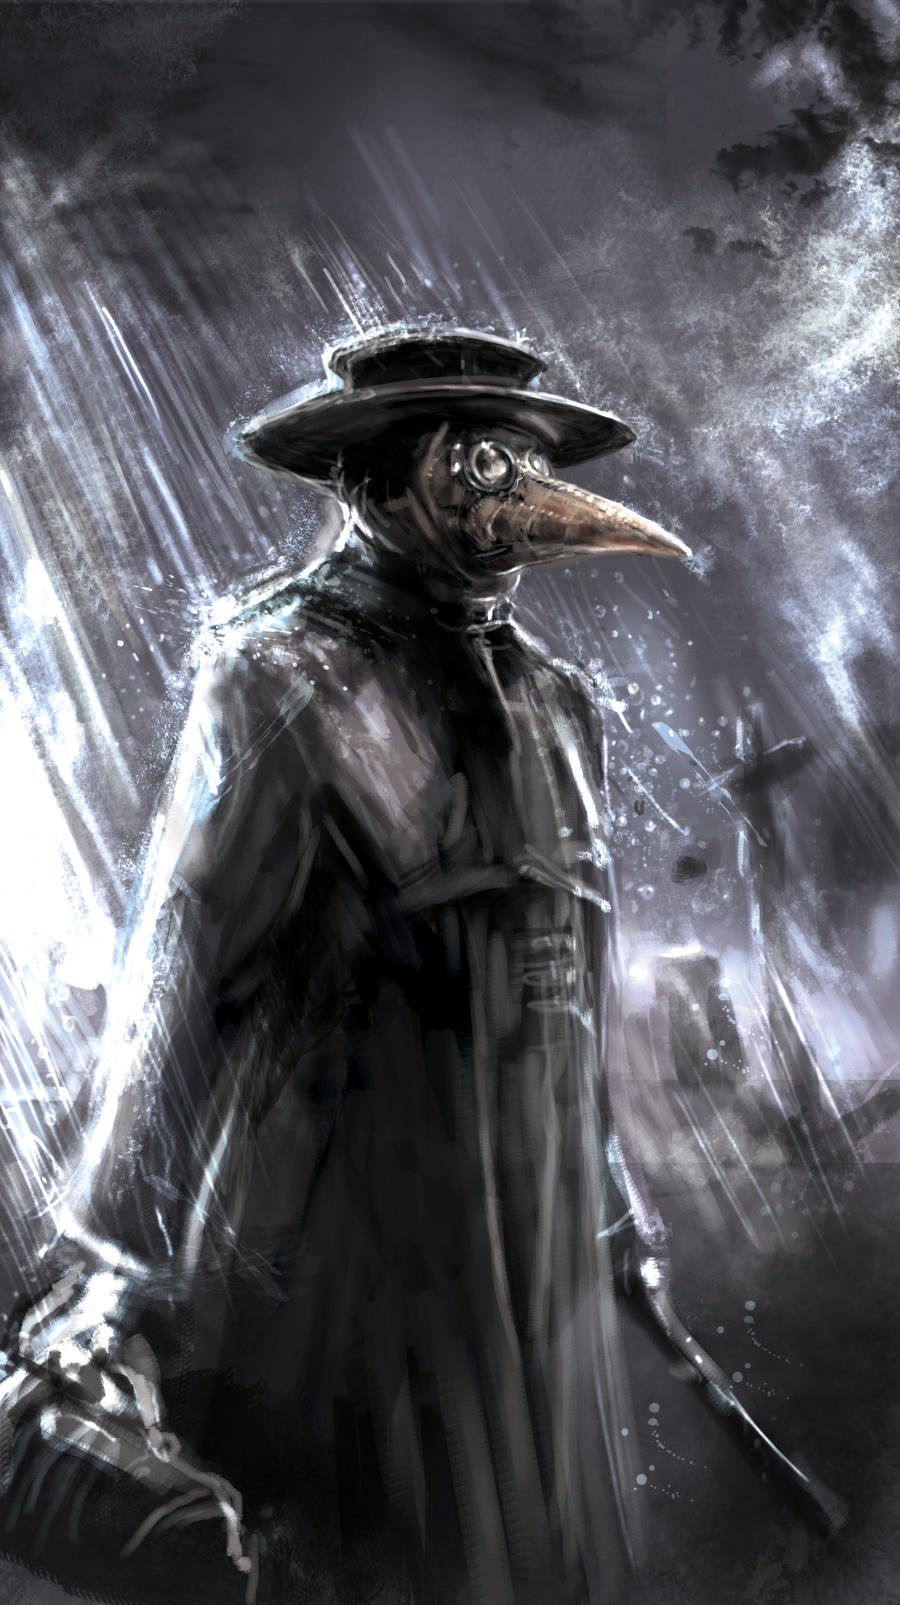 Plague Doctor by Mitchellnolte on DeviantArt